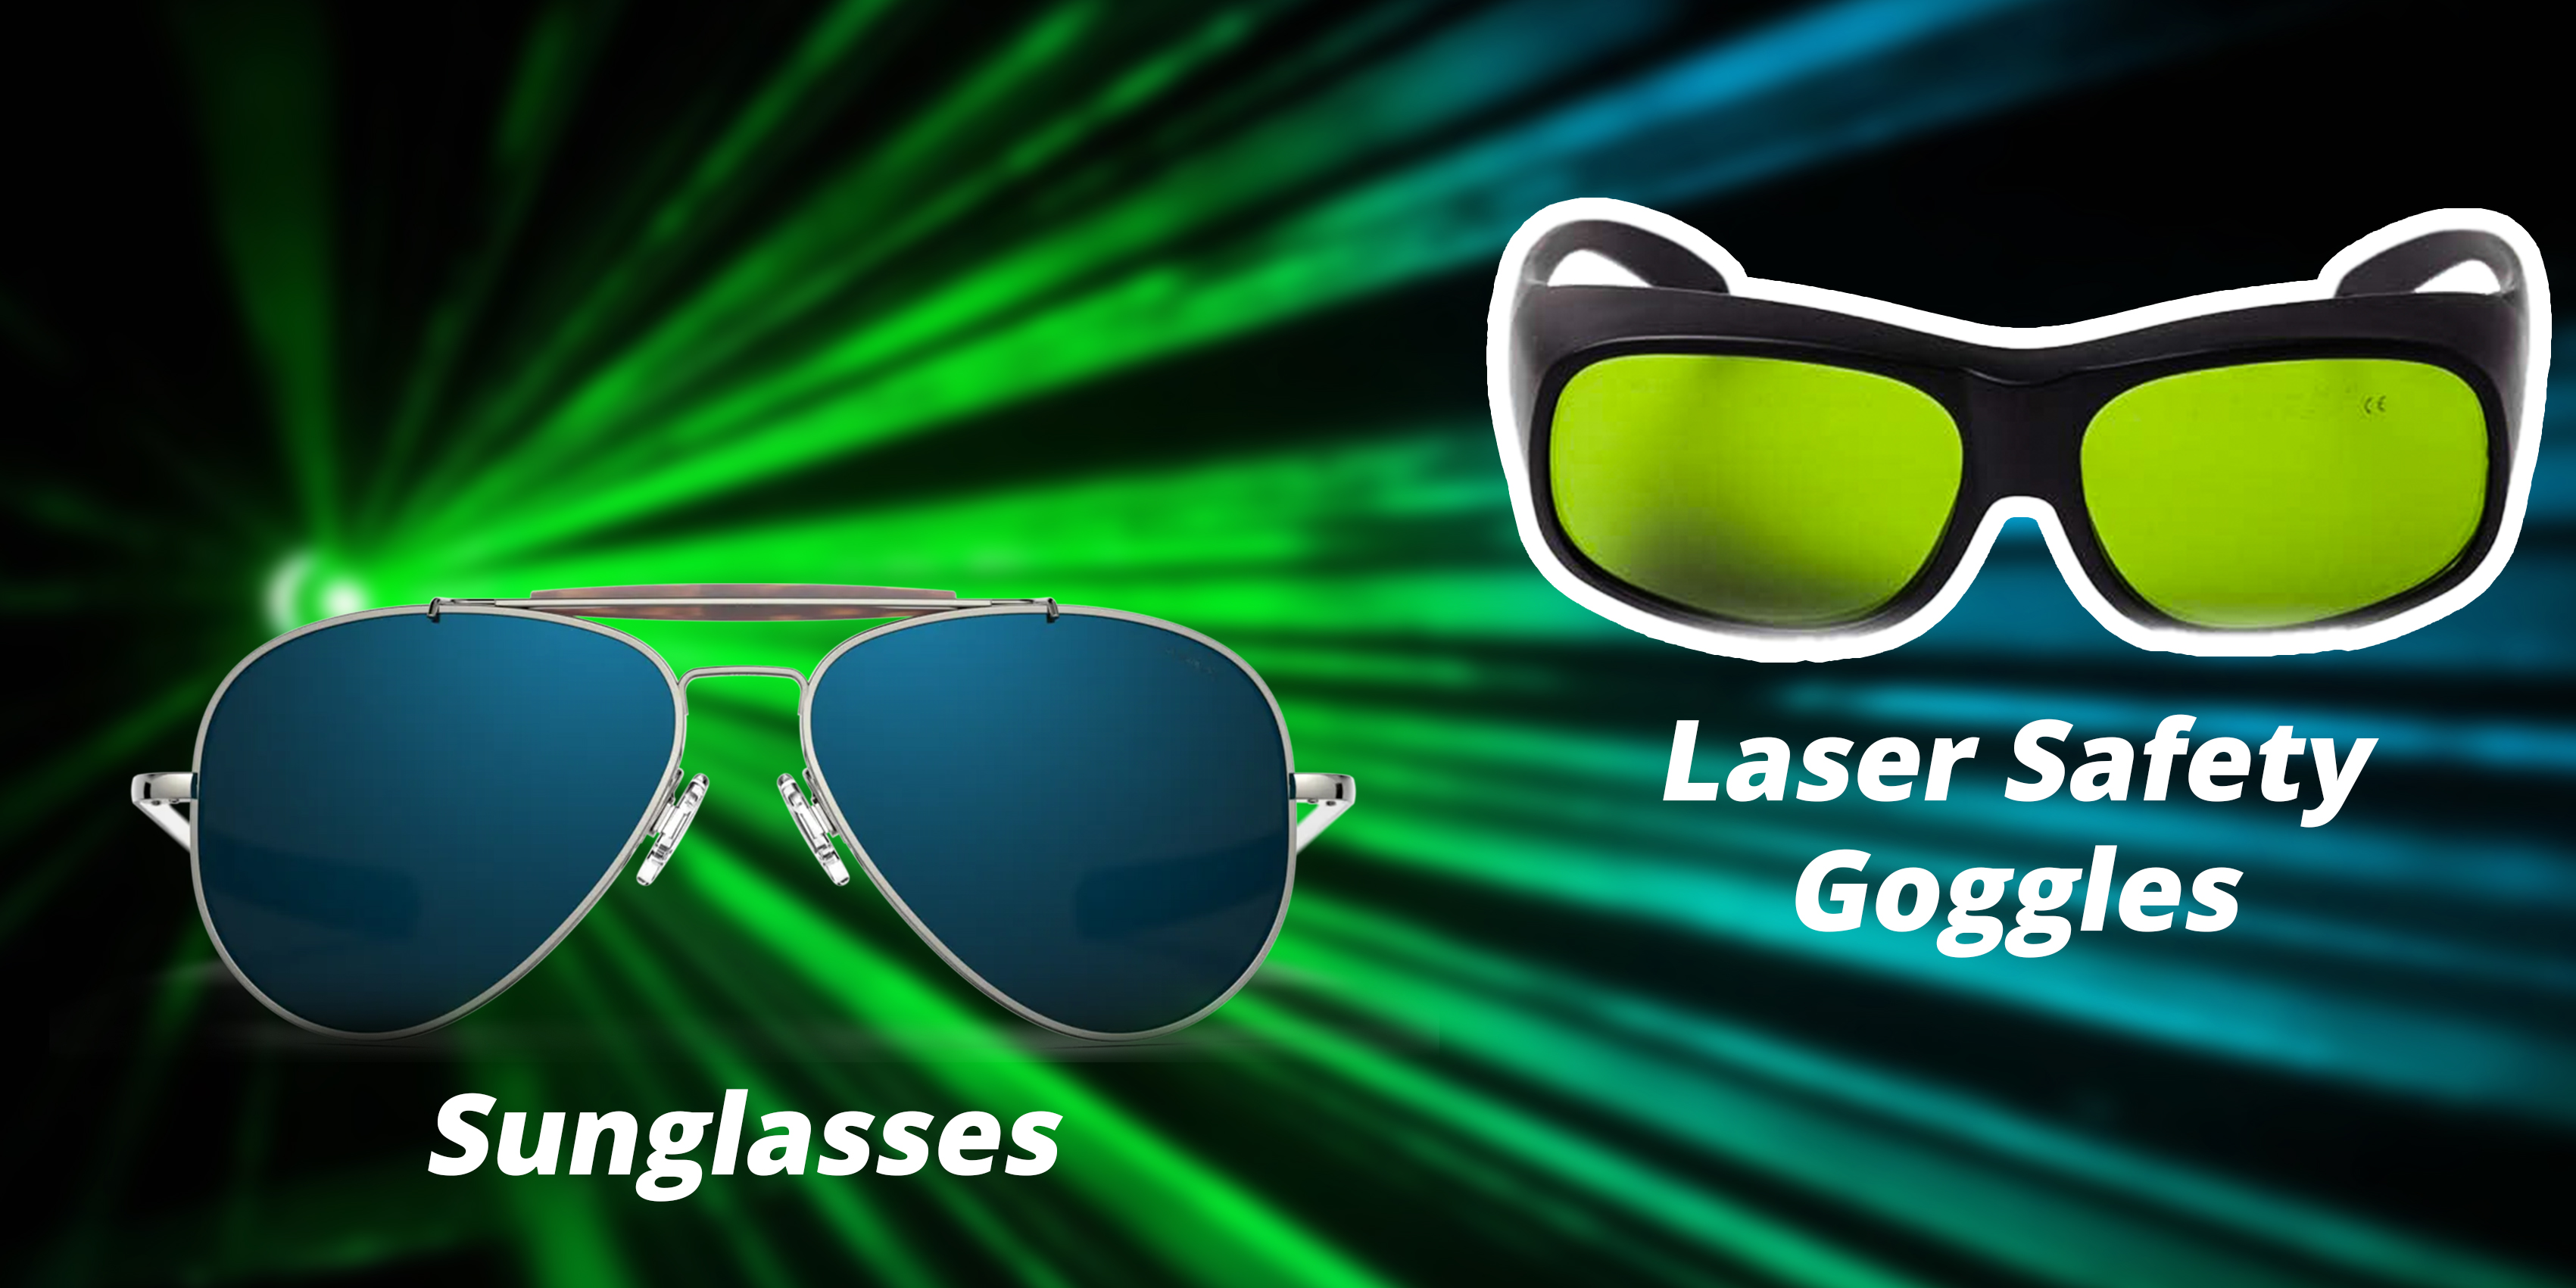 Occhiali da sole o occhiali laser: quale scegliere per la protezione laser?